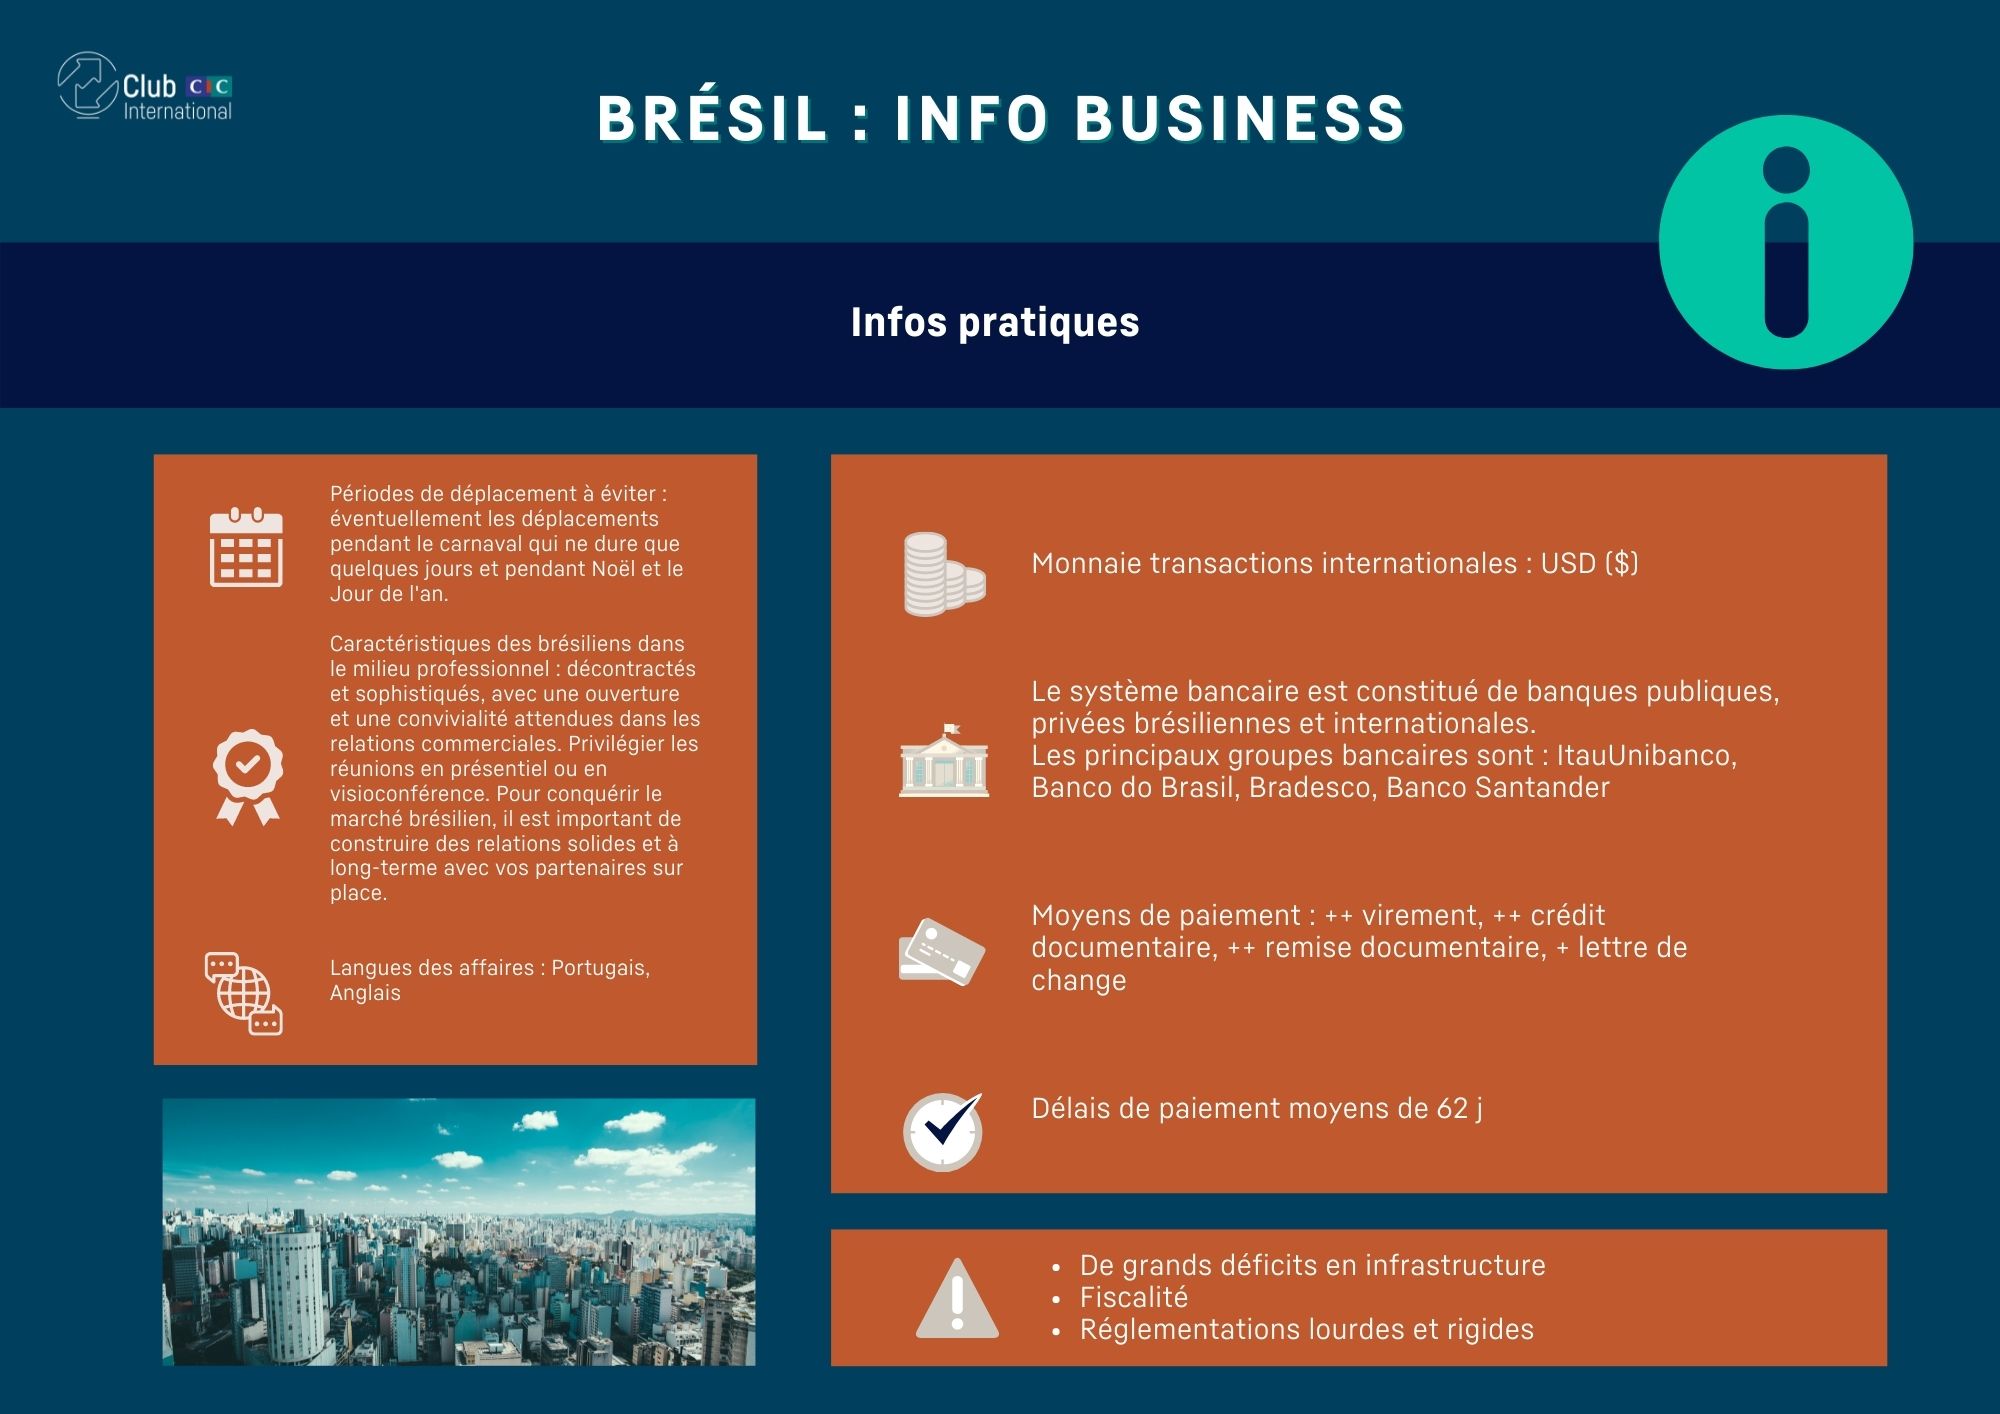 Fiche info business Brésil